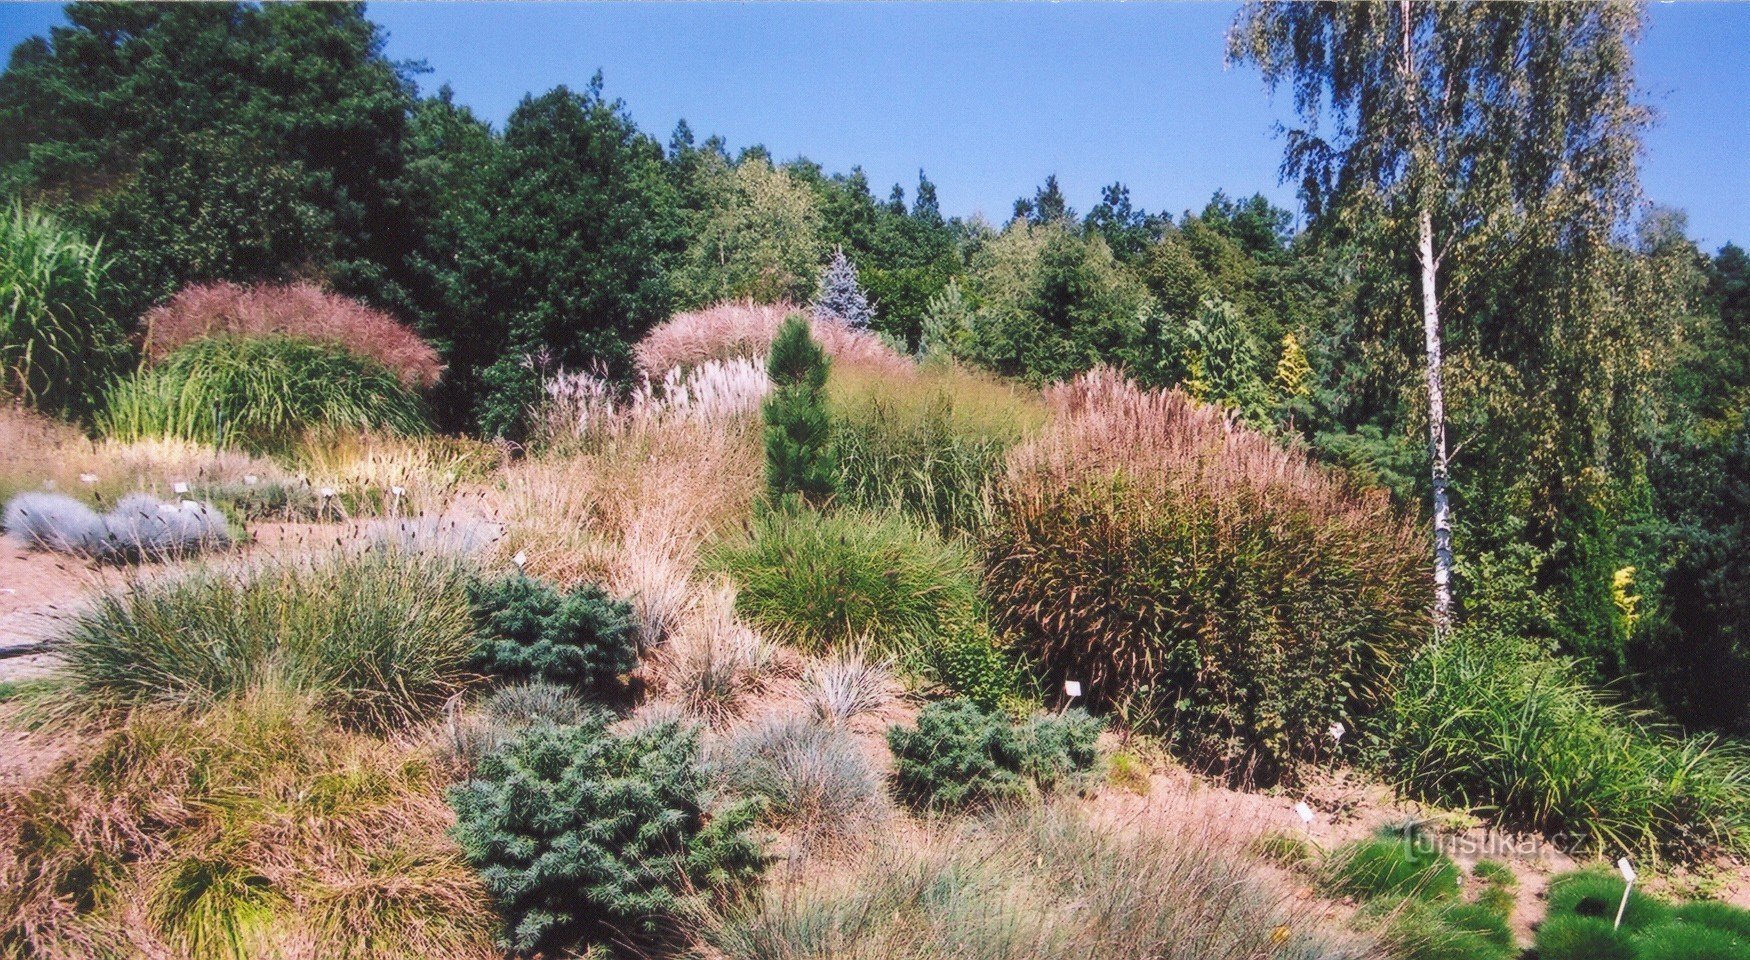 Boskovice - arboretum